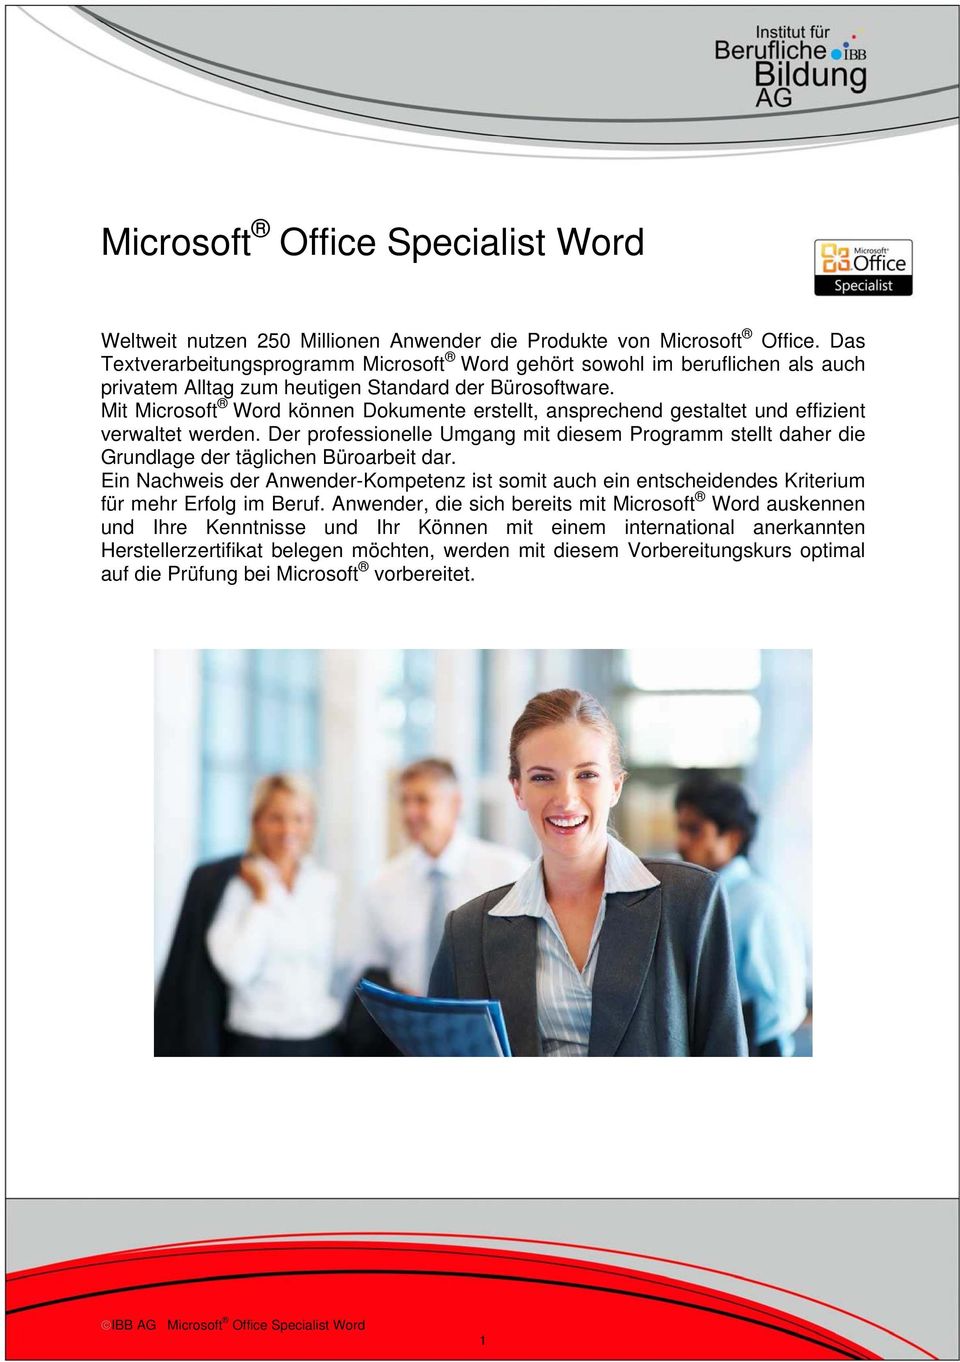 Mit Microsoft Word können Dokumente erstellt, ansprechend gestaltet und effizient verwaltet werden.